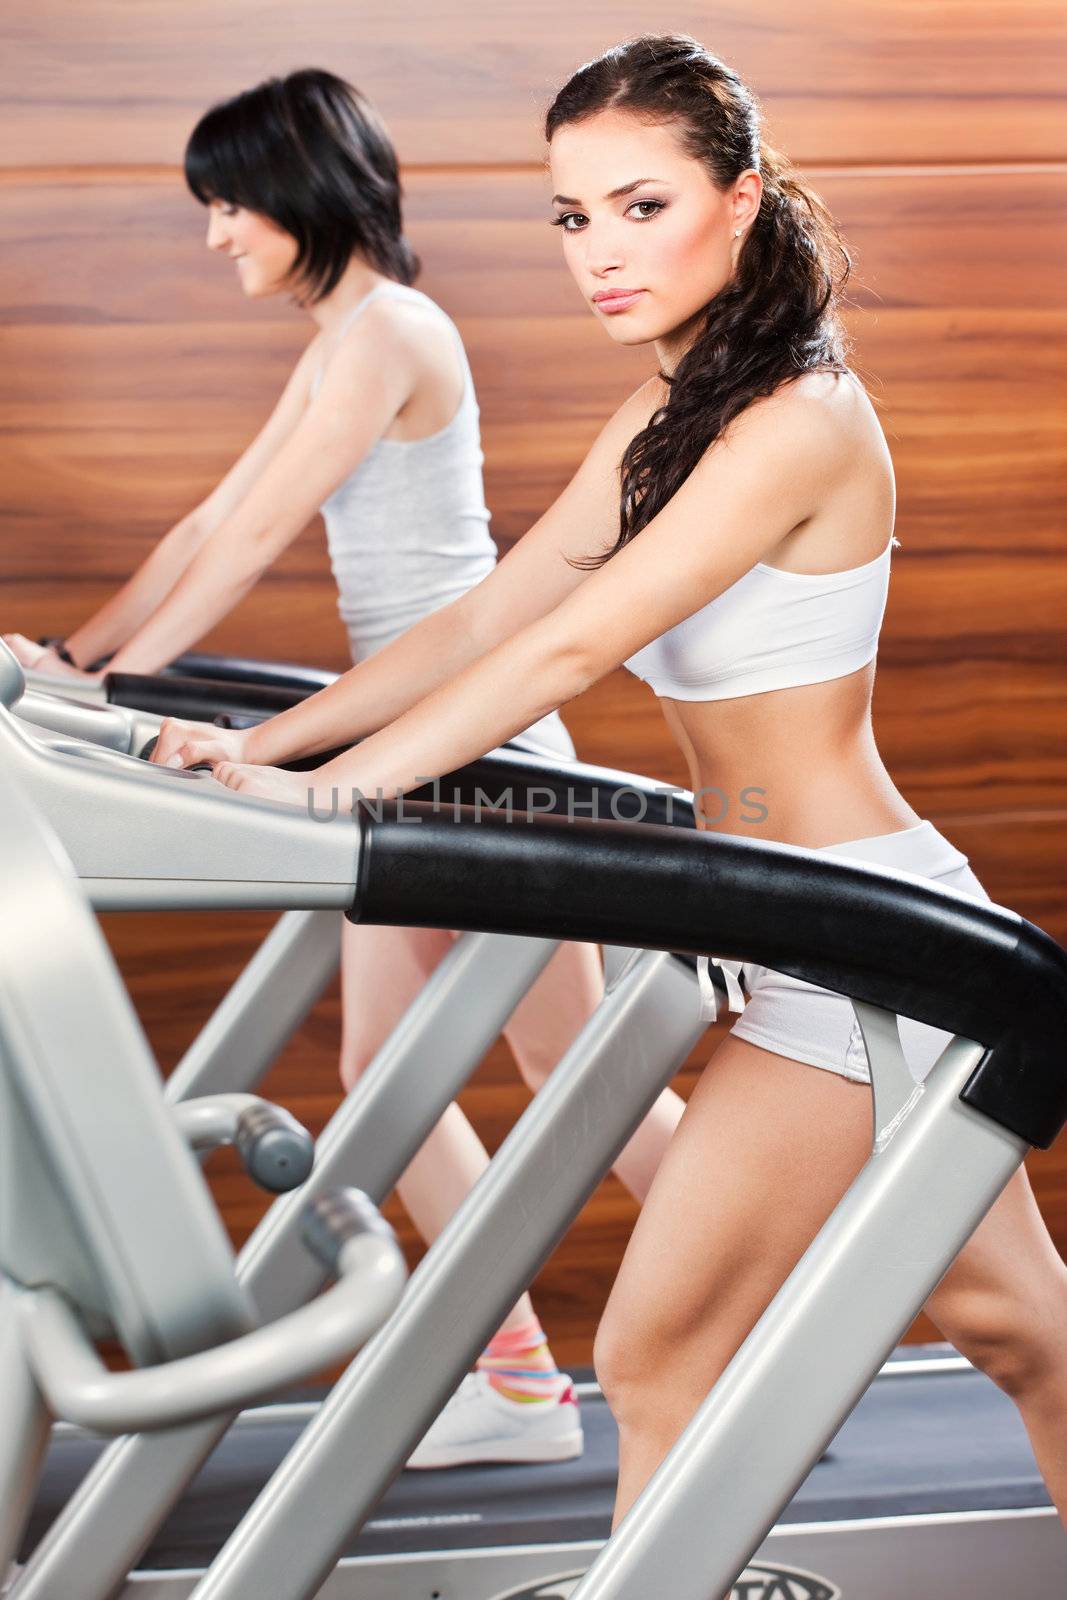 Women doing exercise in gym center